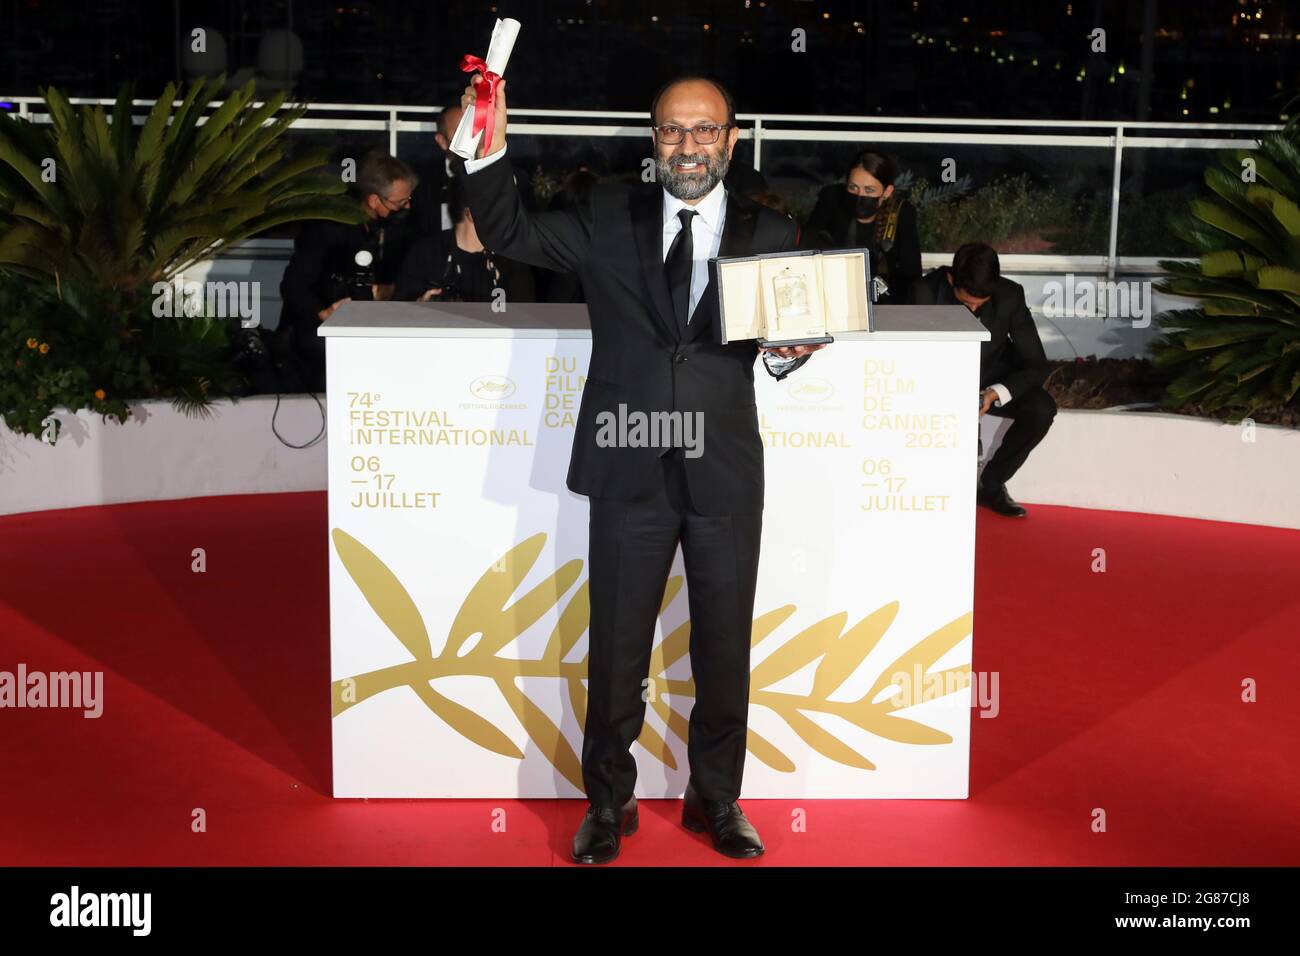 Das 74. Filmfestival von Cannes - Fotocall nach der Abschlusszeremonie - Cannes, Frankreich, 17. Juli 2021. Regisseur Asghar Farhadi, Mitgewinnerin des Grand Prix Awards, posiert für den Film 'A Hero' (UN heros oder Ghahreman). REUTERS/Reinhard Krause Stockfoto